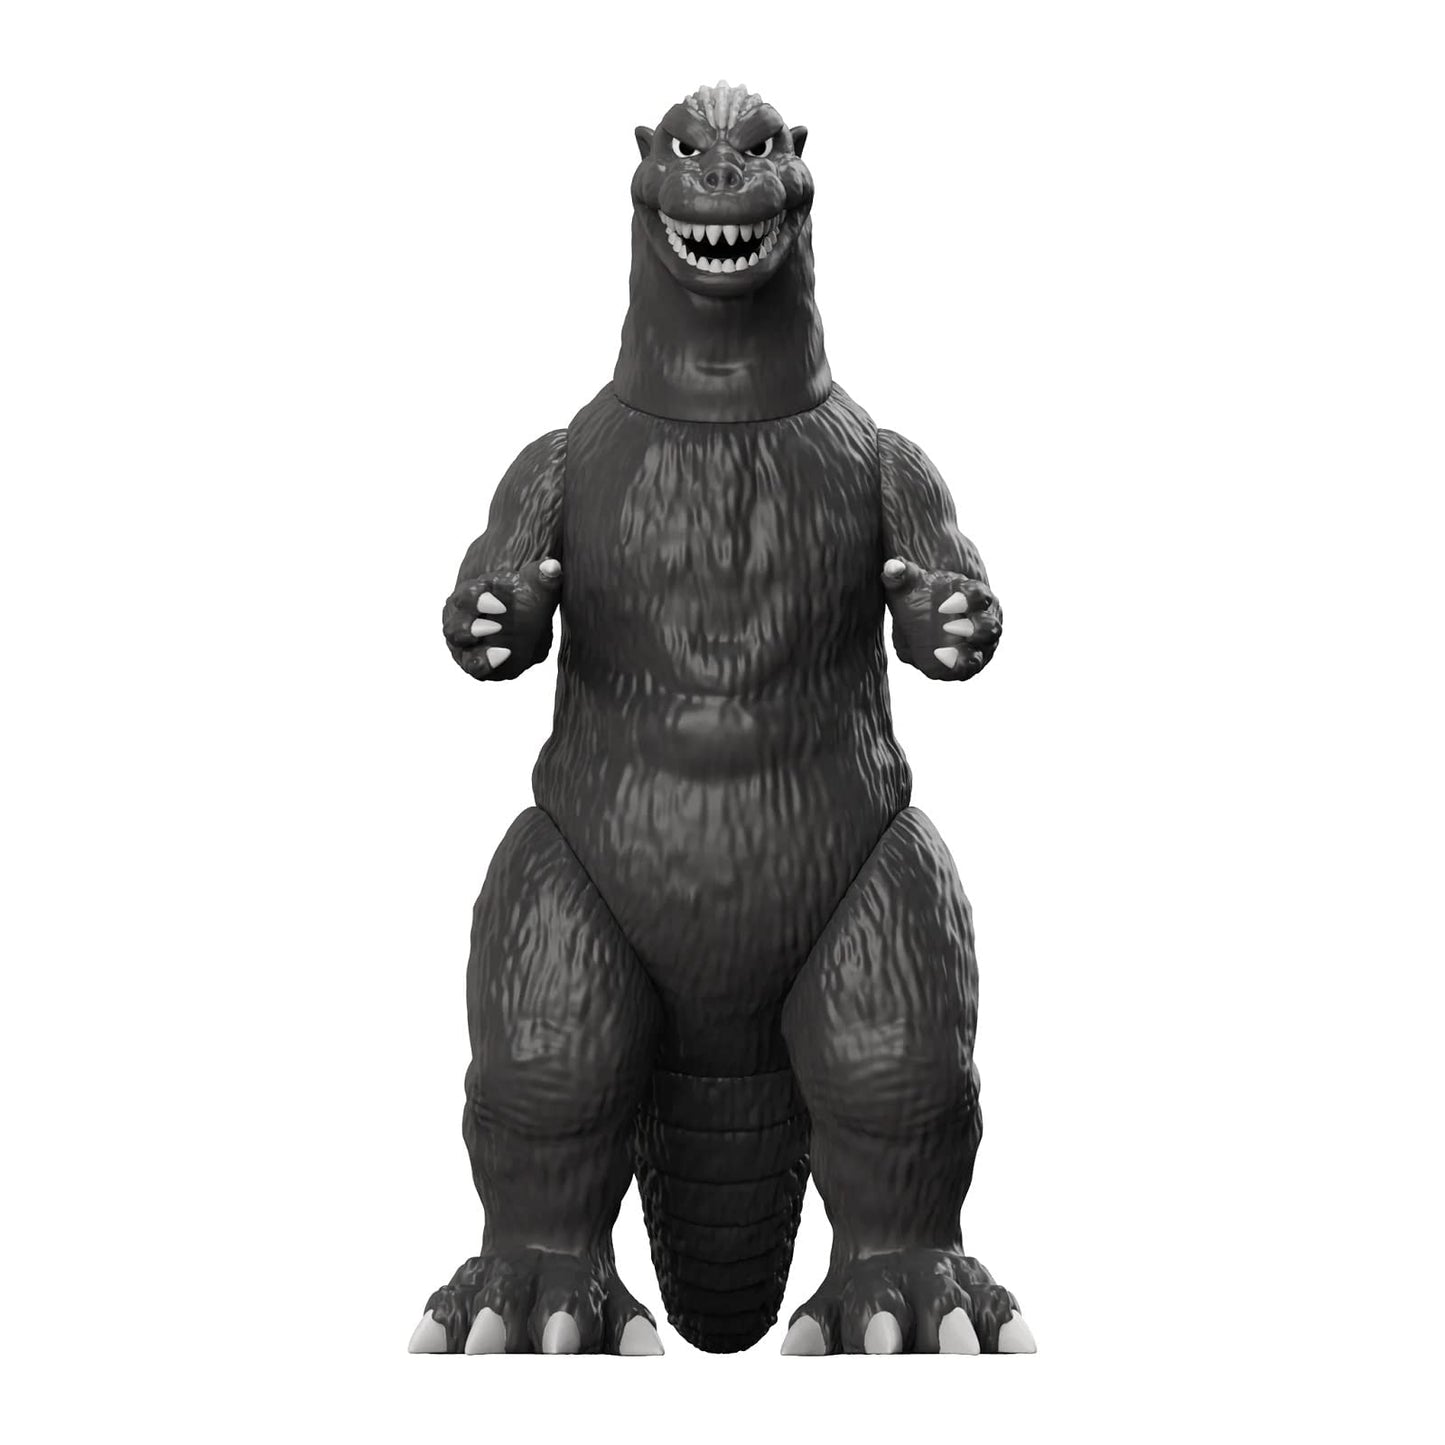 TOHO W1 Godzilla 1954 Reaction Figure